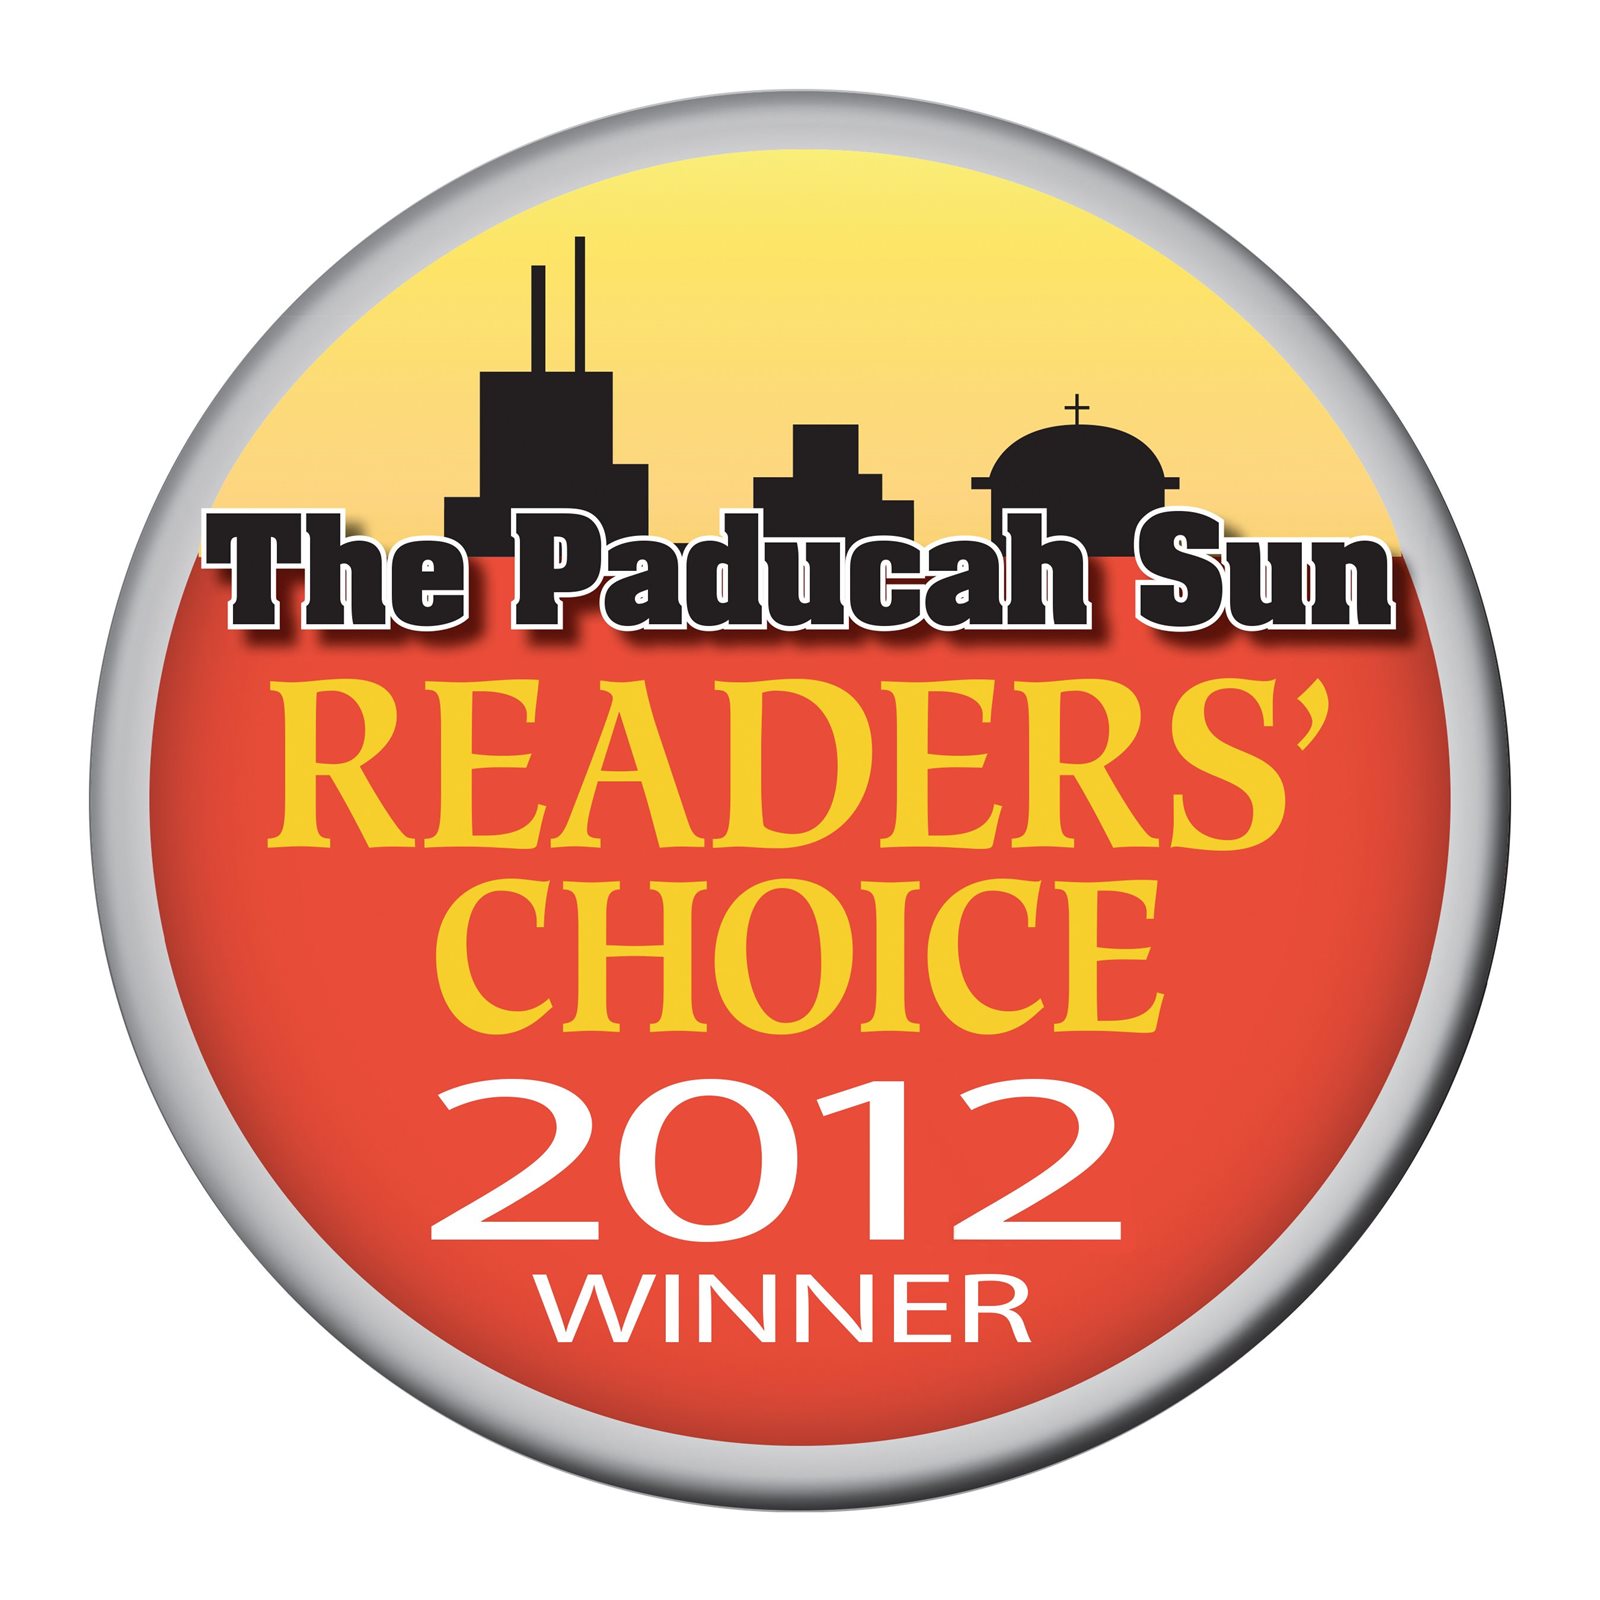 The Paducah Sun Readers' Choice 2012 Winner